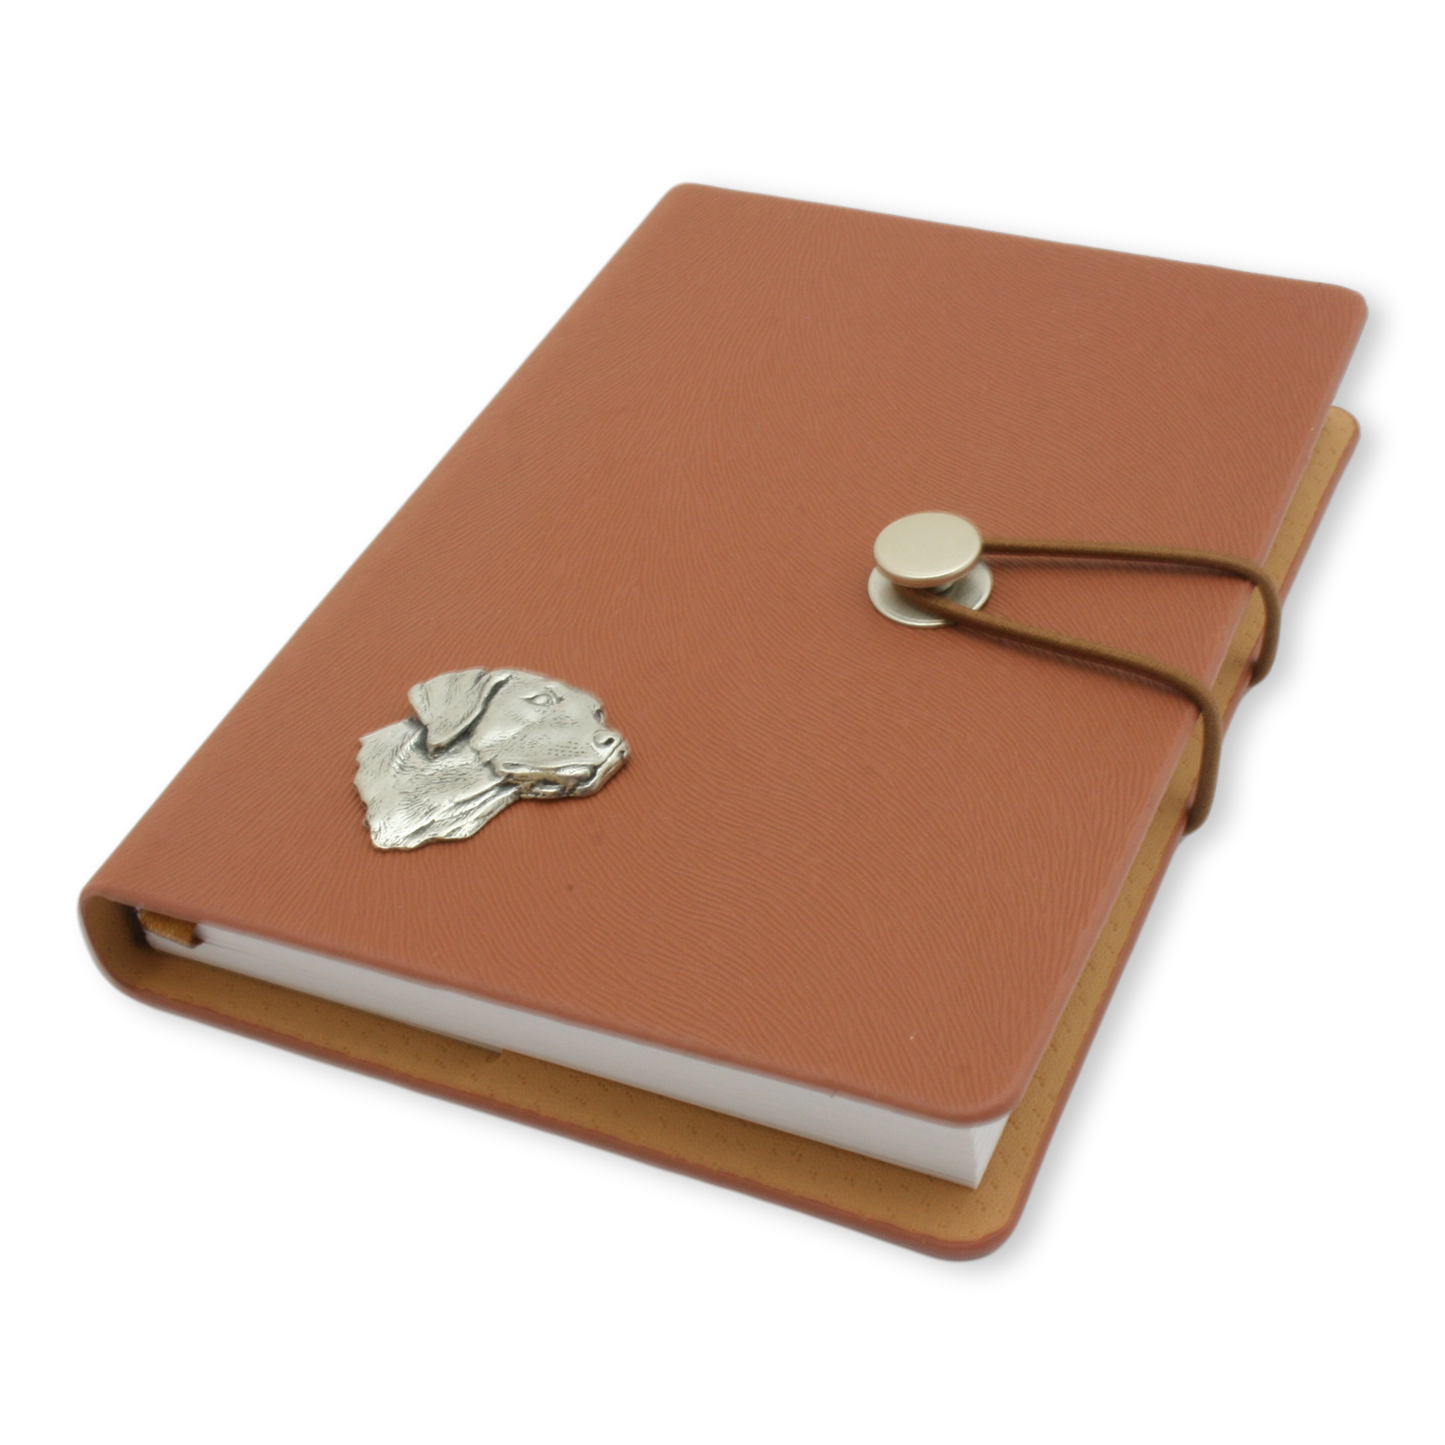 Labrador Notebook